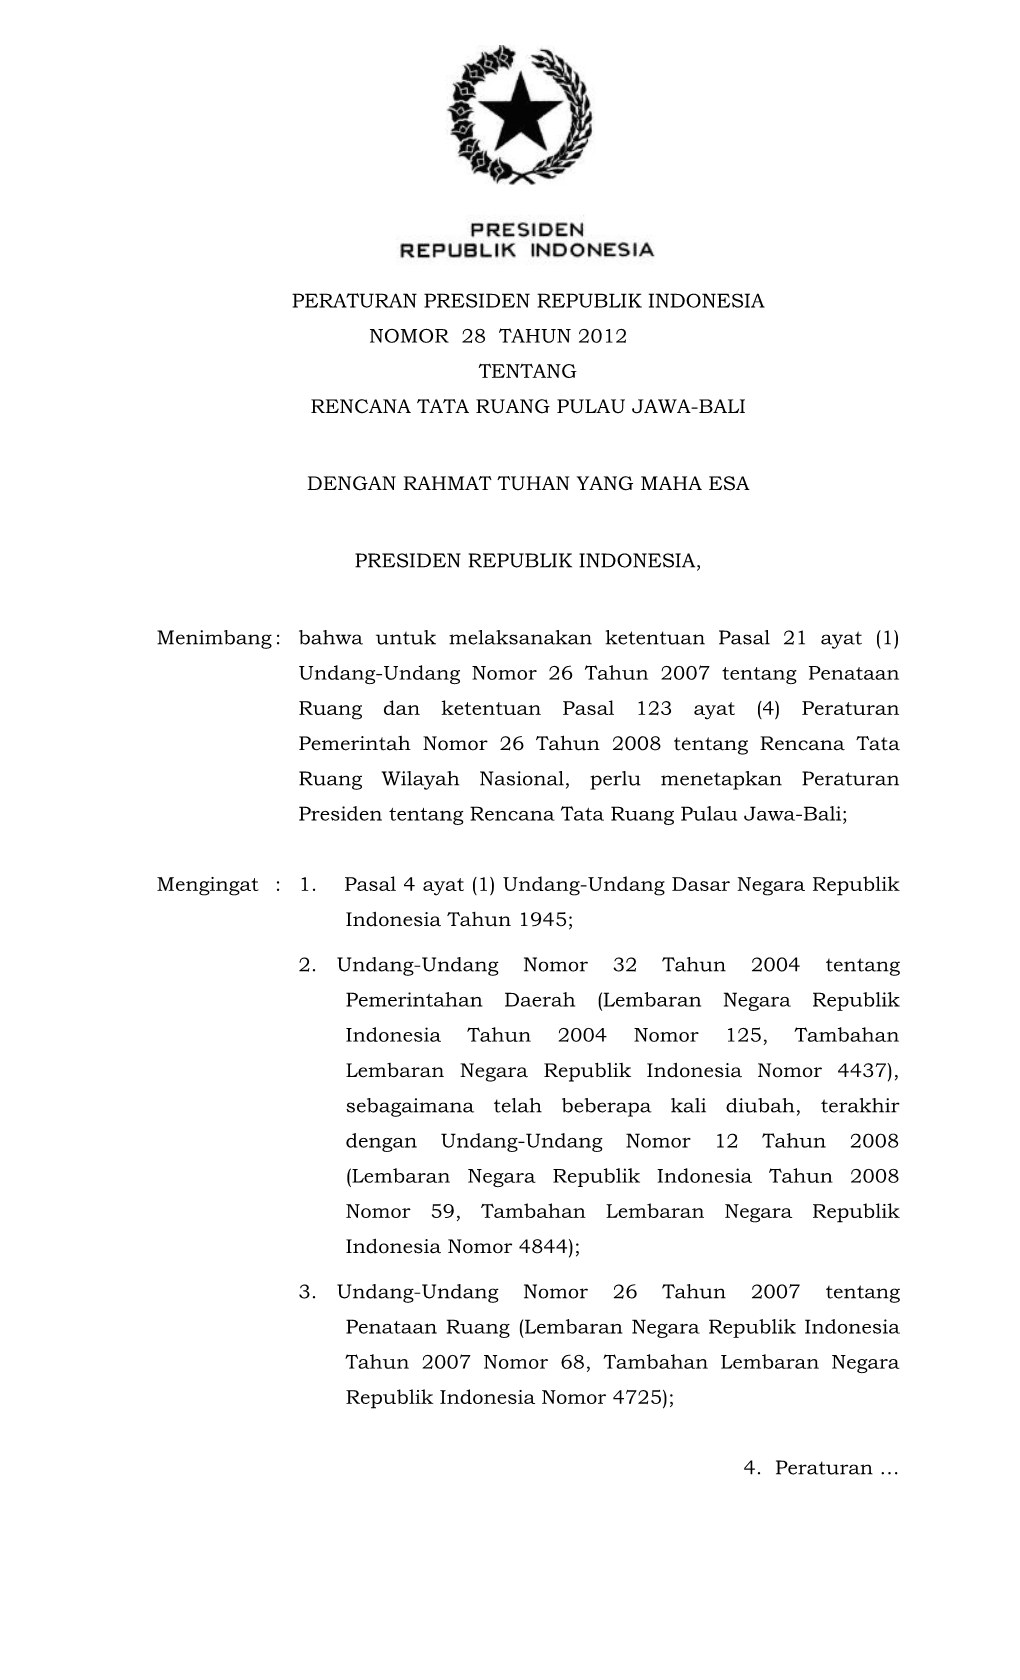 Peraturan Presiden Republik Indonesia Nomor 28 Tahun 2012 Tentang Rencana Tata Ruang Pulau Jawa-Bali